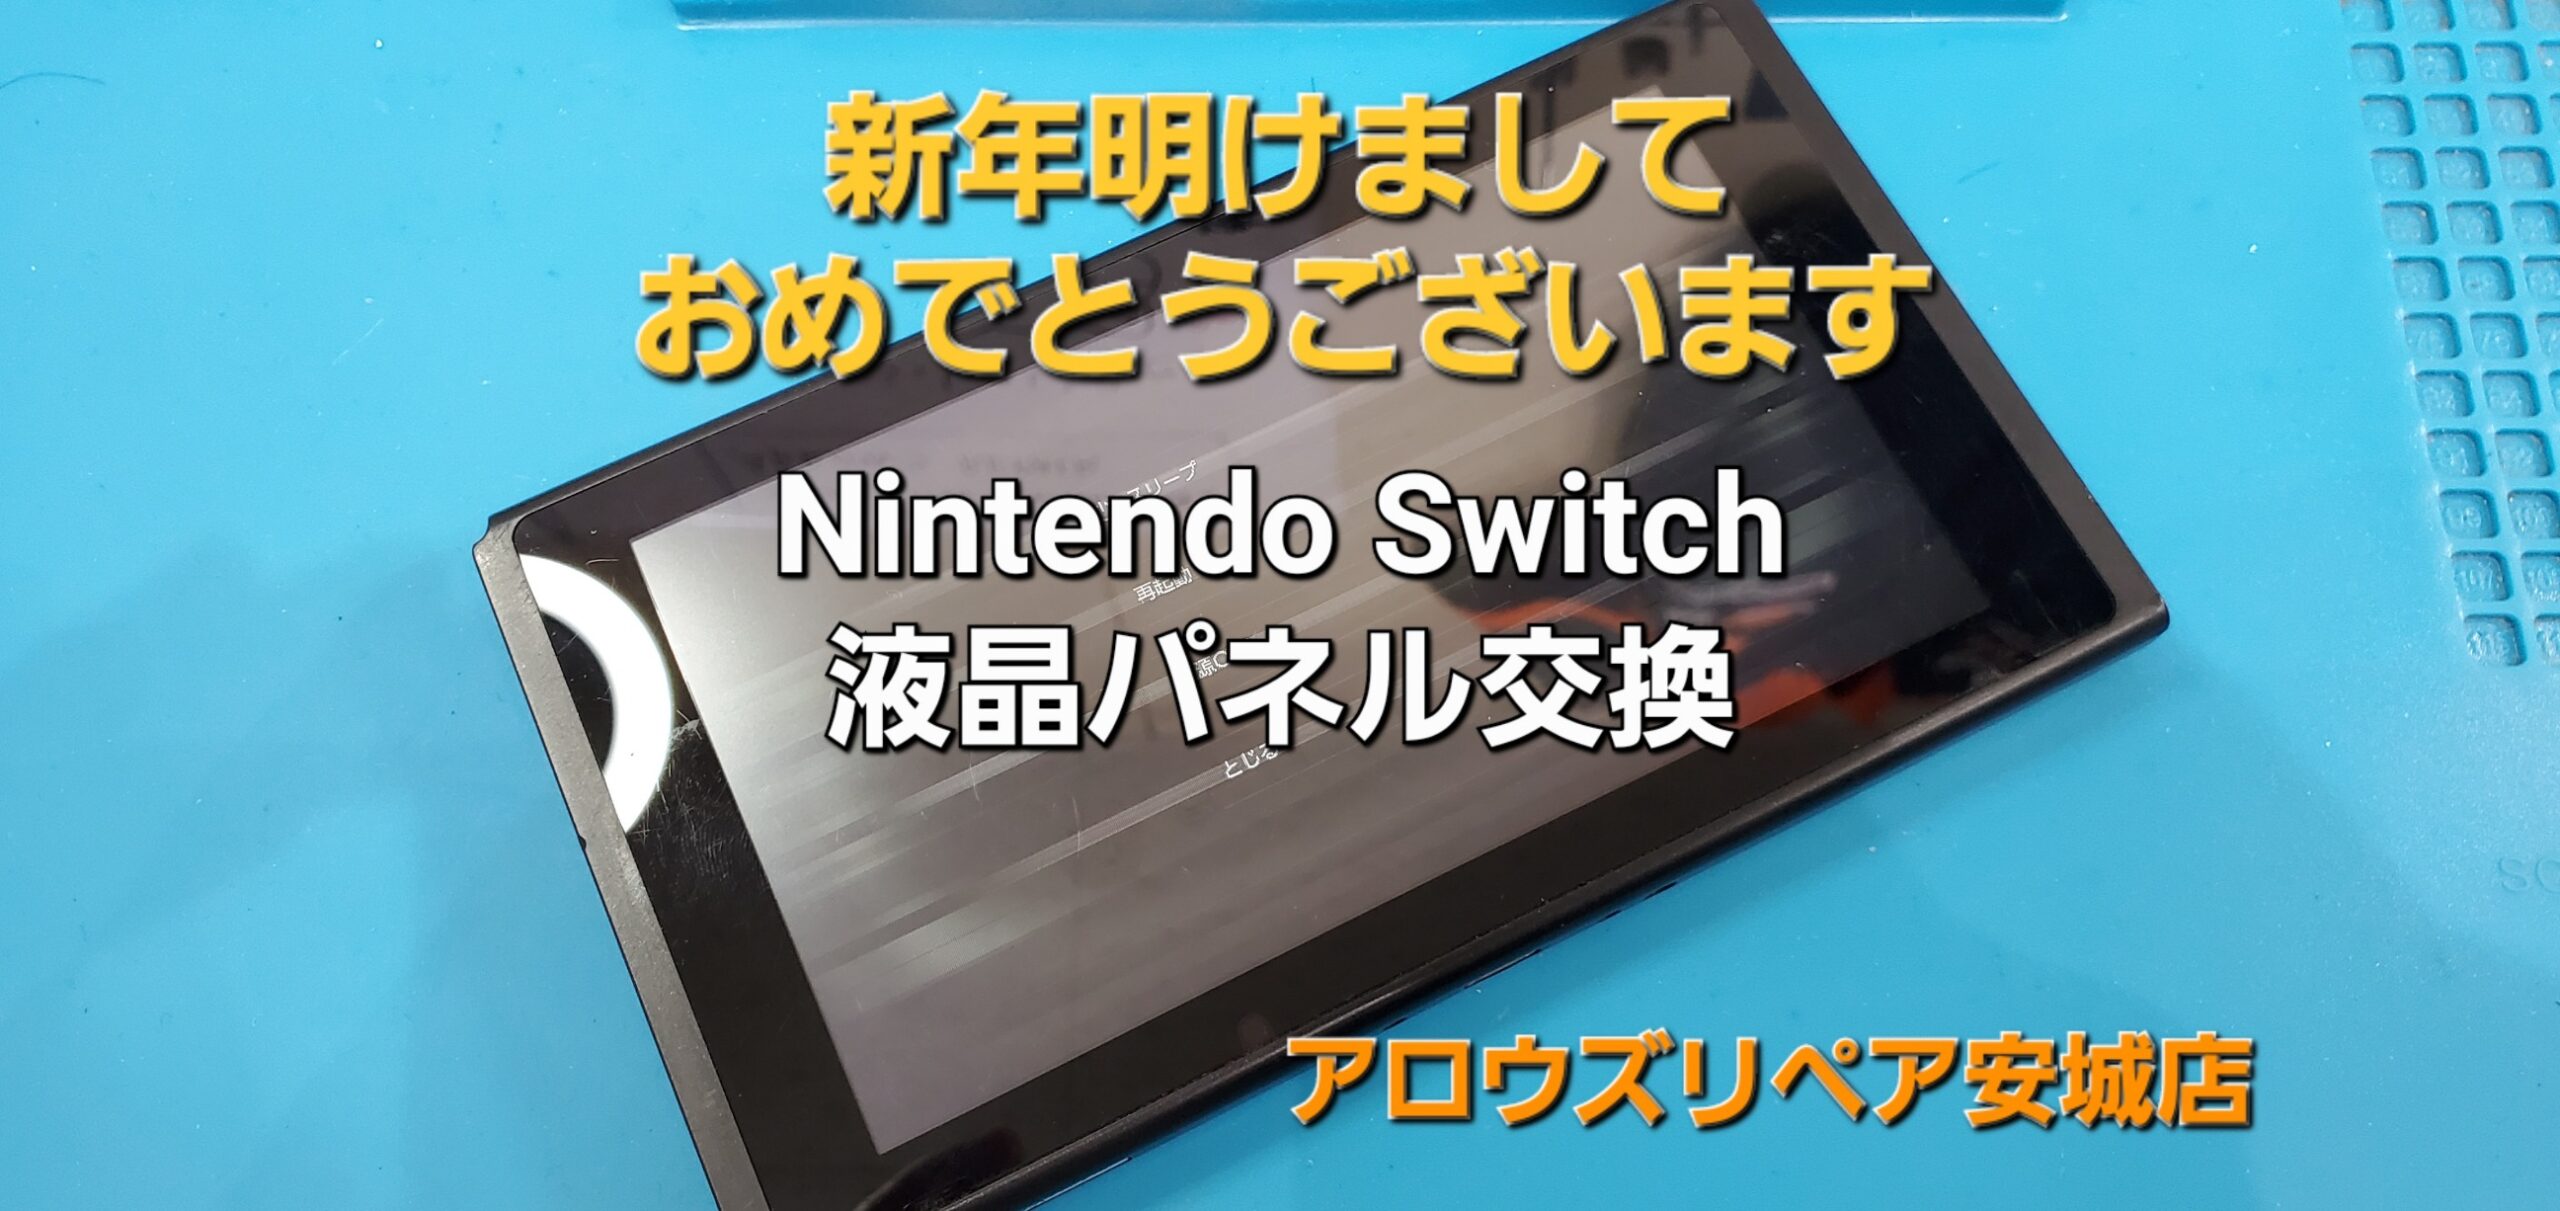 岡崎市よりご来店、Nintendo Switch 液晶パネル交換修理のご紹介。|安城駅徒歩3分|iPhone・Switch・iPad修理ならアロウズリペア安城がおすすめ！JR安城駅から徒歩3分、データそのまま即日修理、Switch修理もお任せ下さい。お客様のお悩み解決致します。